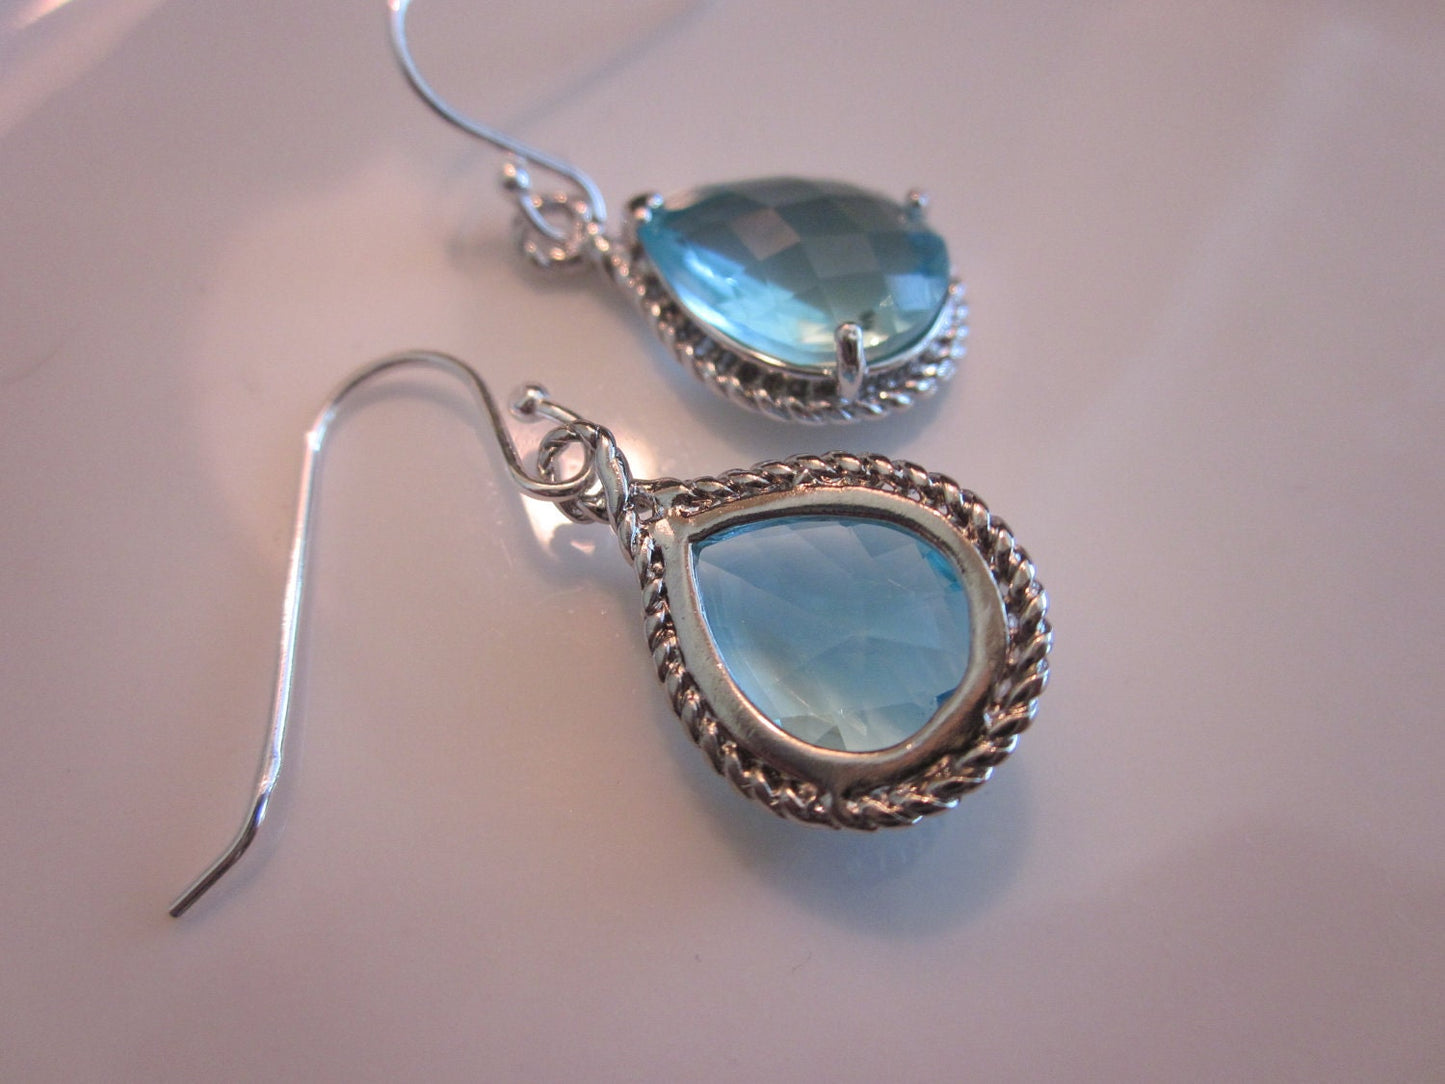 Aquamarine Earrings Silver- Teardrop Glass - Sterling Silver Earwires -  Bridesmaid Earrings - Wedding Earrings - Bridal Earrings